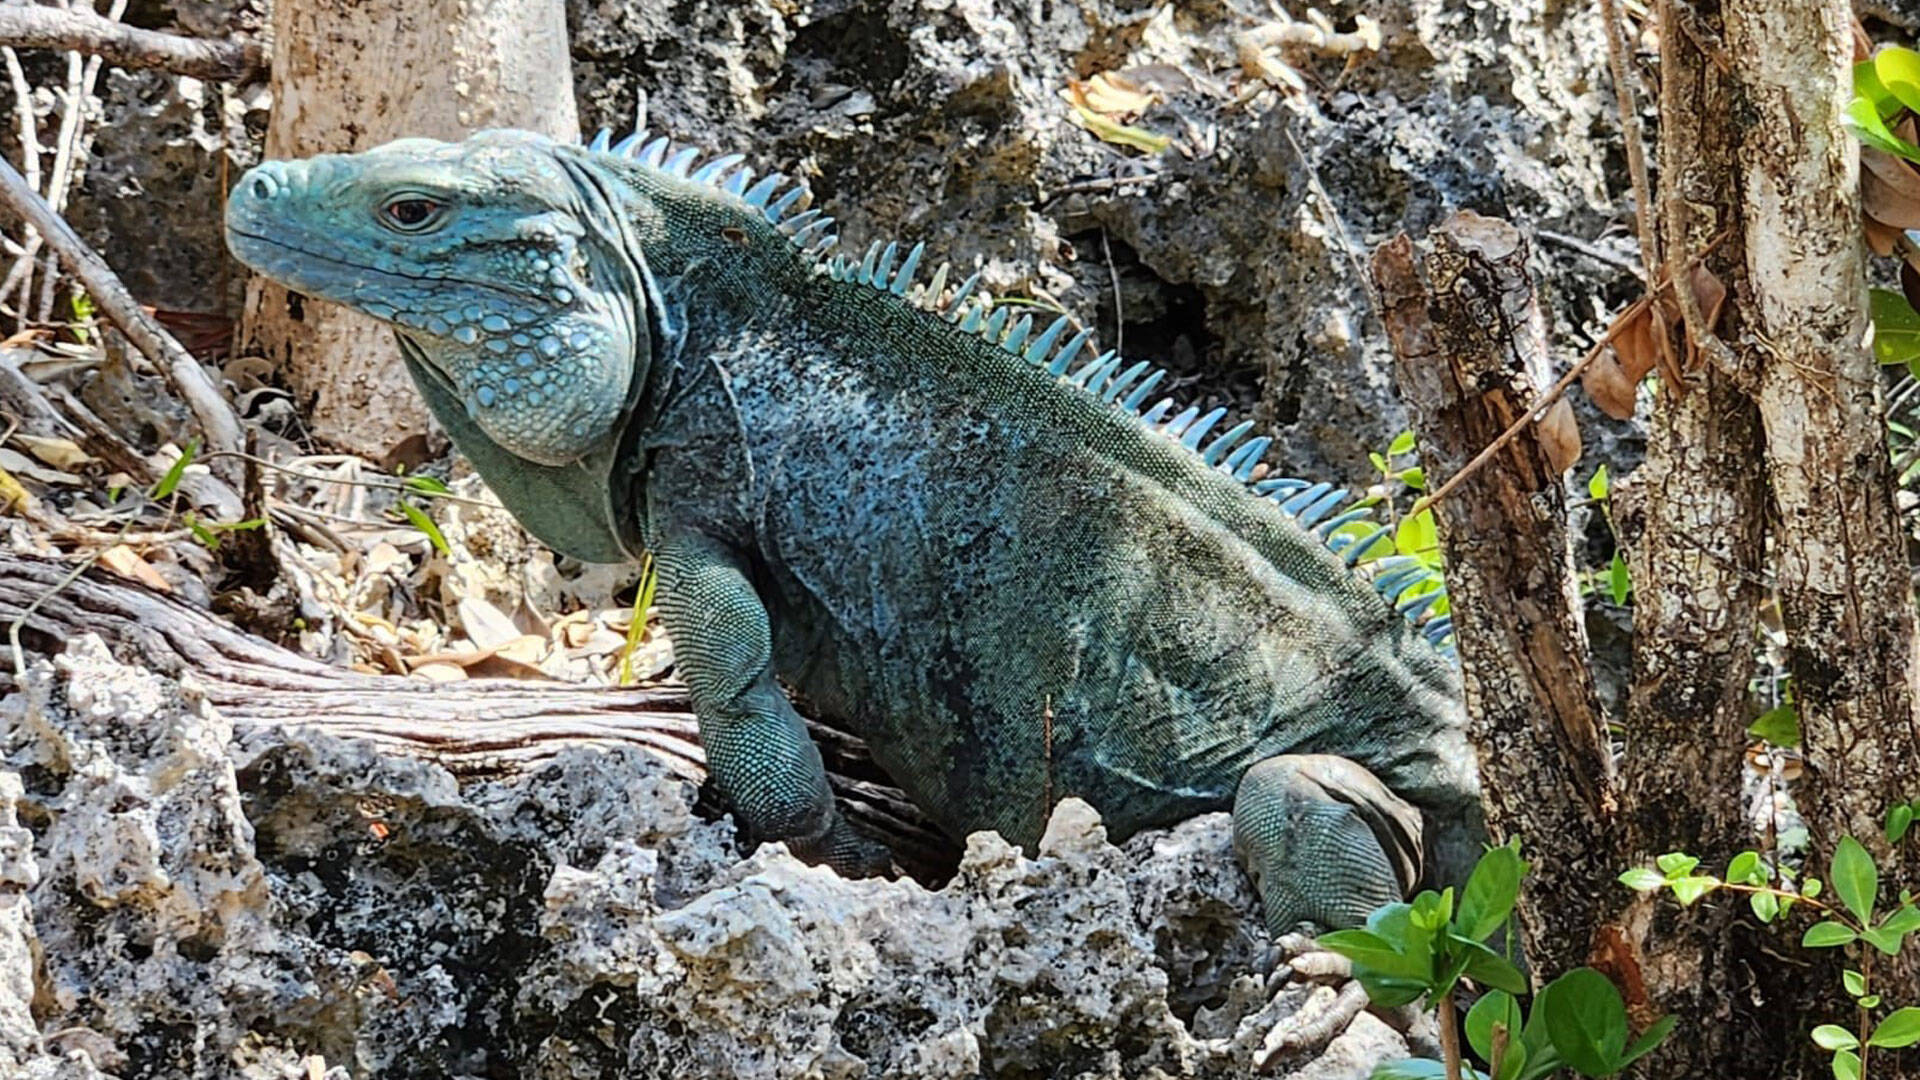 https://cdn.aucklandunlimited.com/zoo/assets/media/cayman-islands-iguana-gallery-8.jpg